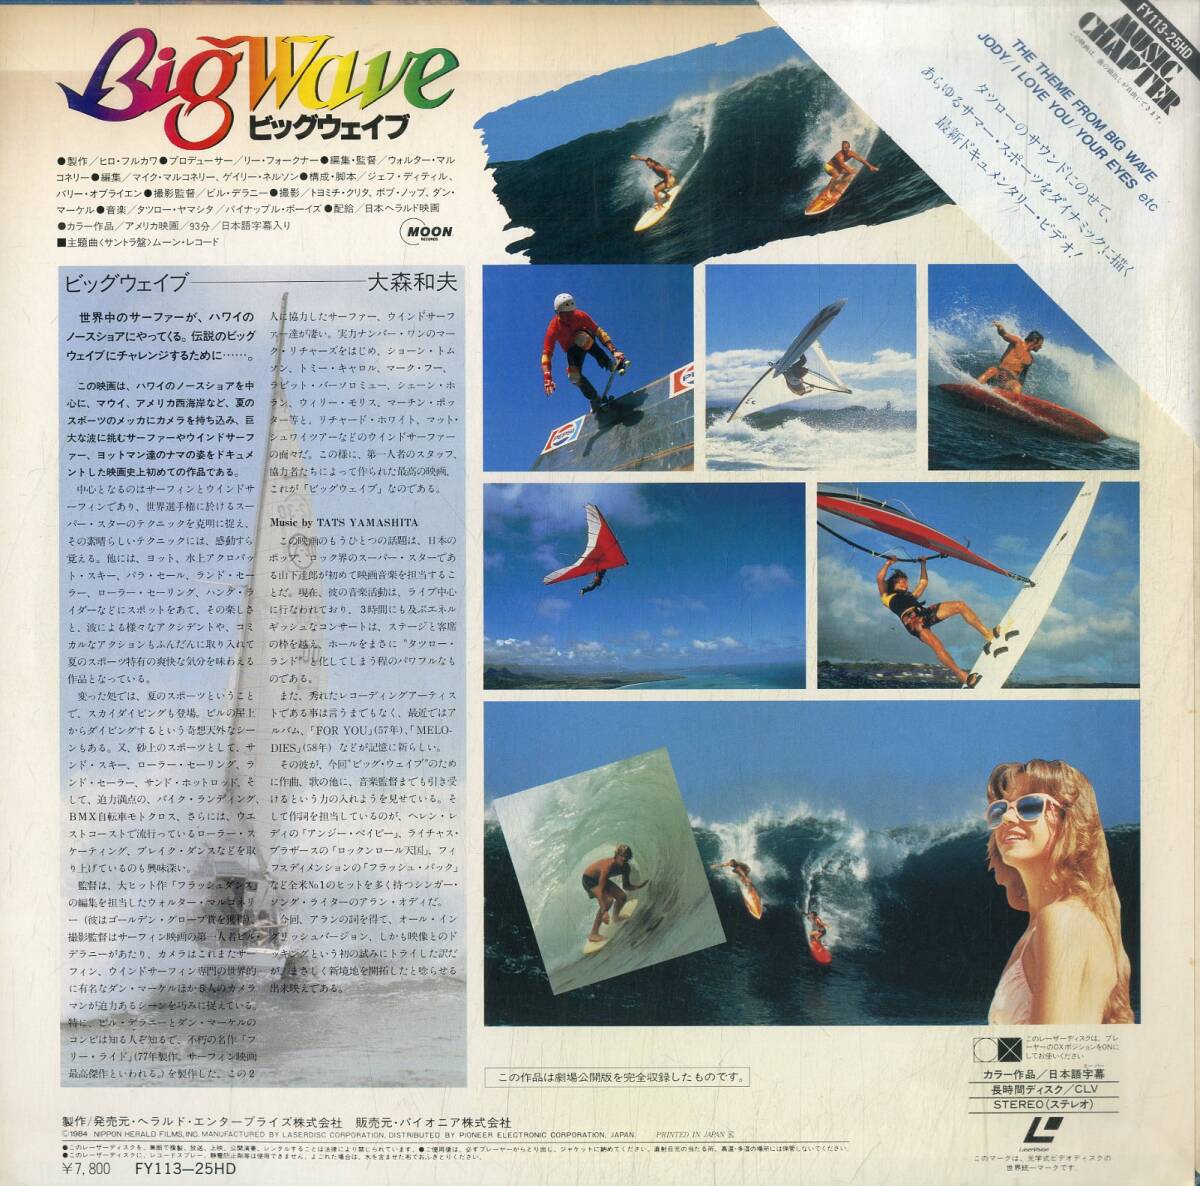 B00178141/LD/山下達郎 / パイナップル・ボーイズ「ビック・ウェイブ Big Wave (1984年・FY113-25HD)」_画像2